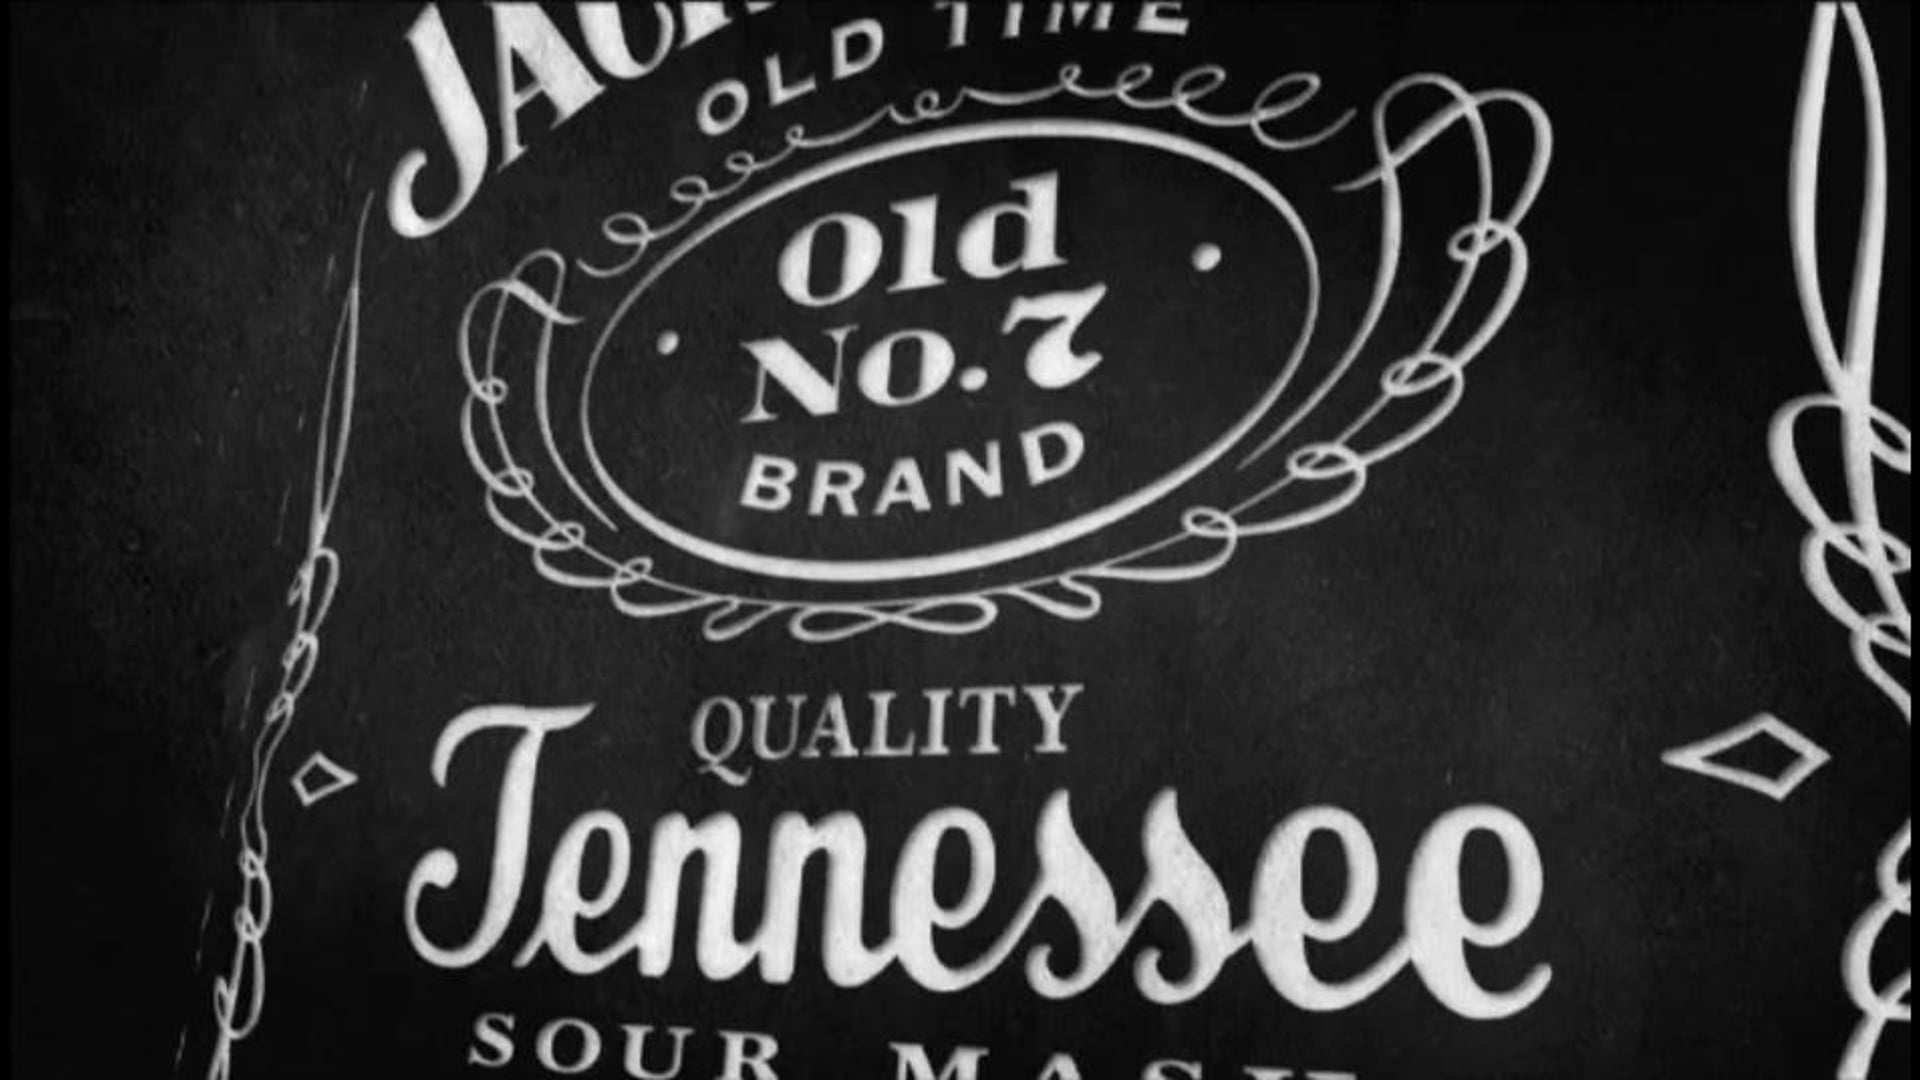 Jack Daniels Tennessee